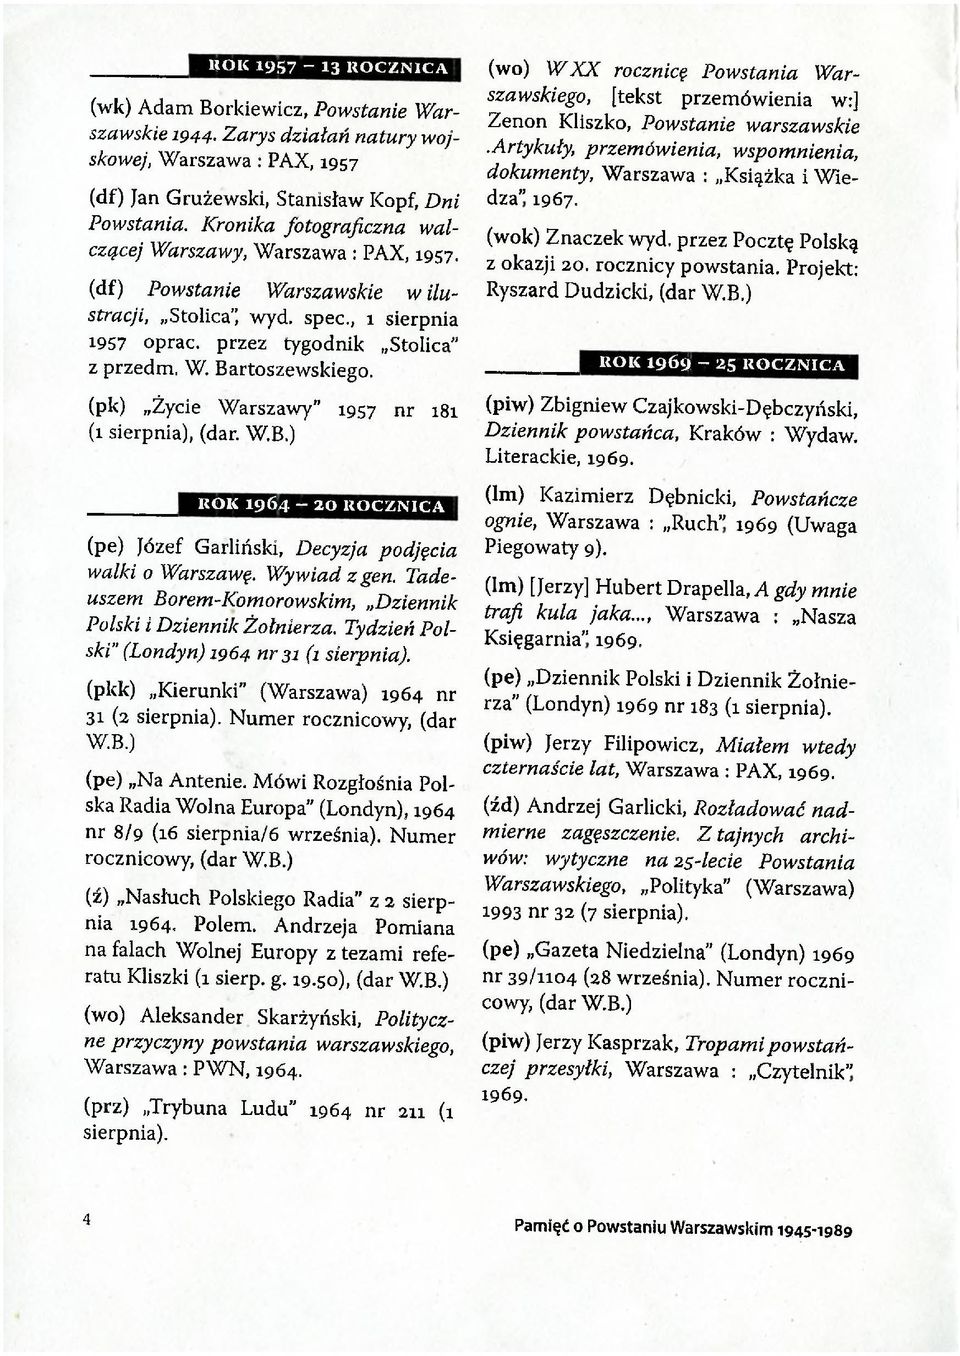 (pk) Życie Warszawy 1957 nr 181 (1 sierpnia), (dar. ROK 1 9 6 4-2 0 R O C ZN IC A (pe) Józef Garliński, Decyzja podjęcia walki o Warszawę. Wywiad z gen.